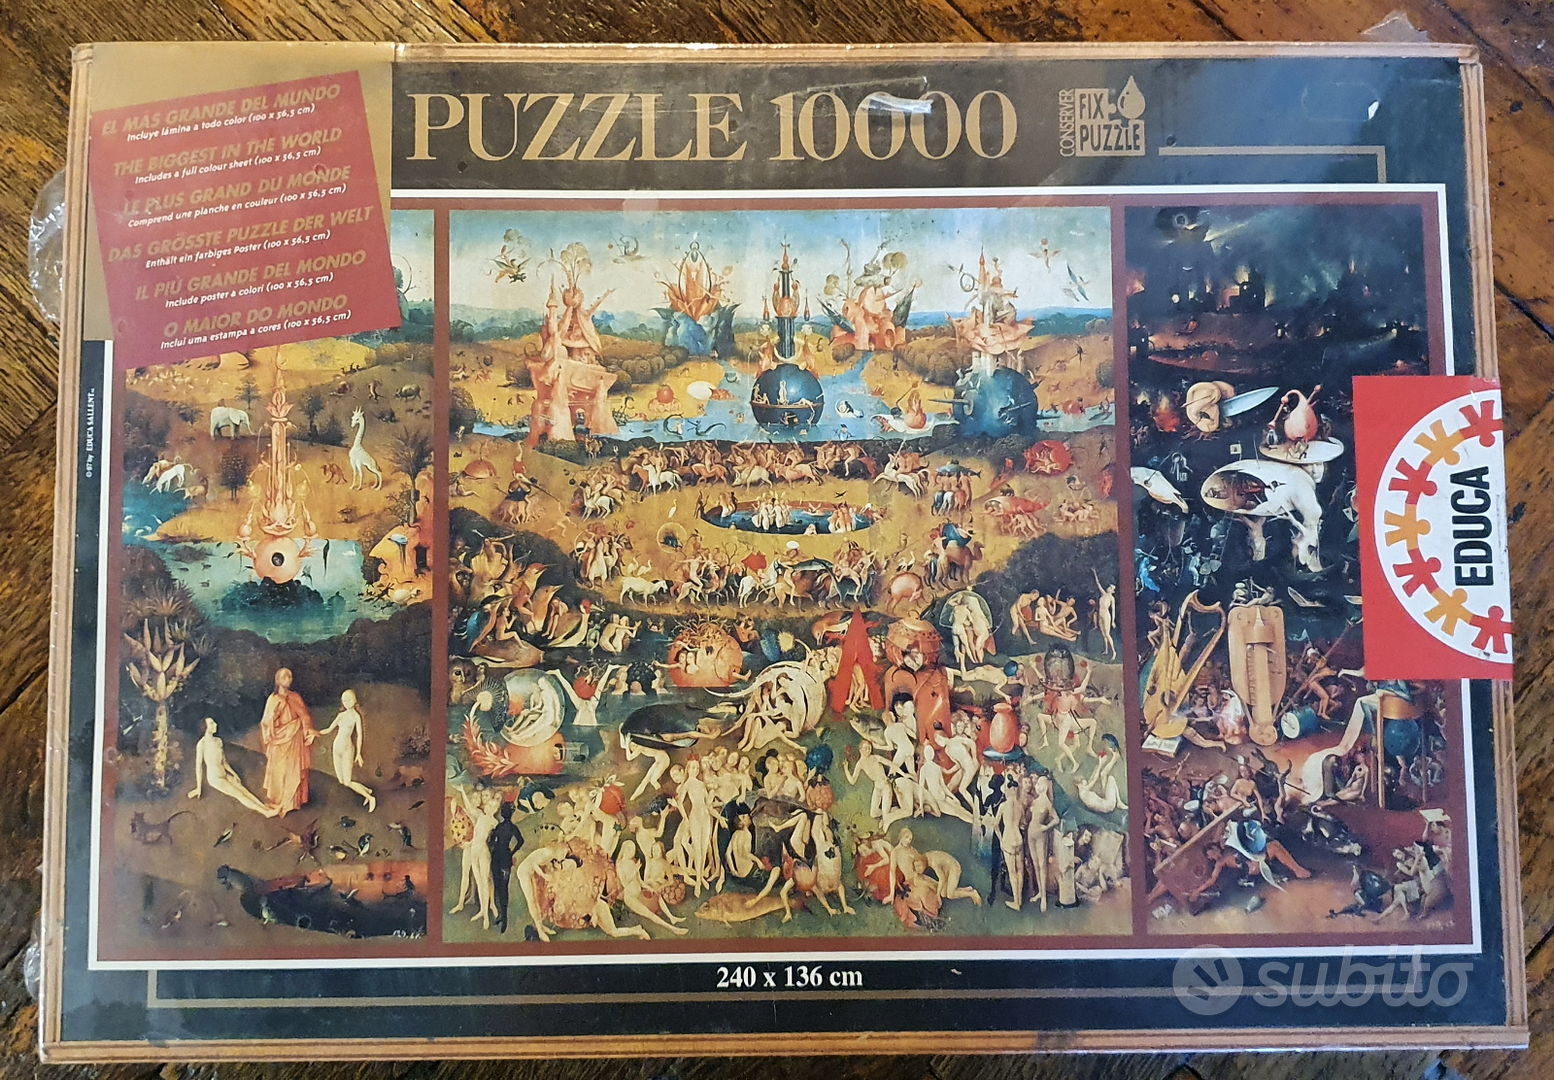 Puzzle Educa 10.000 pezzi Garden of delights - Collezionismo In